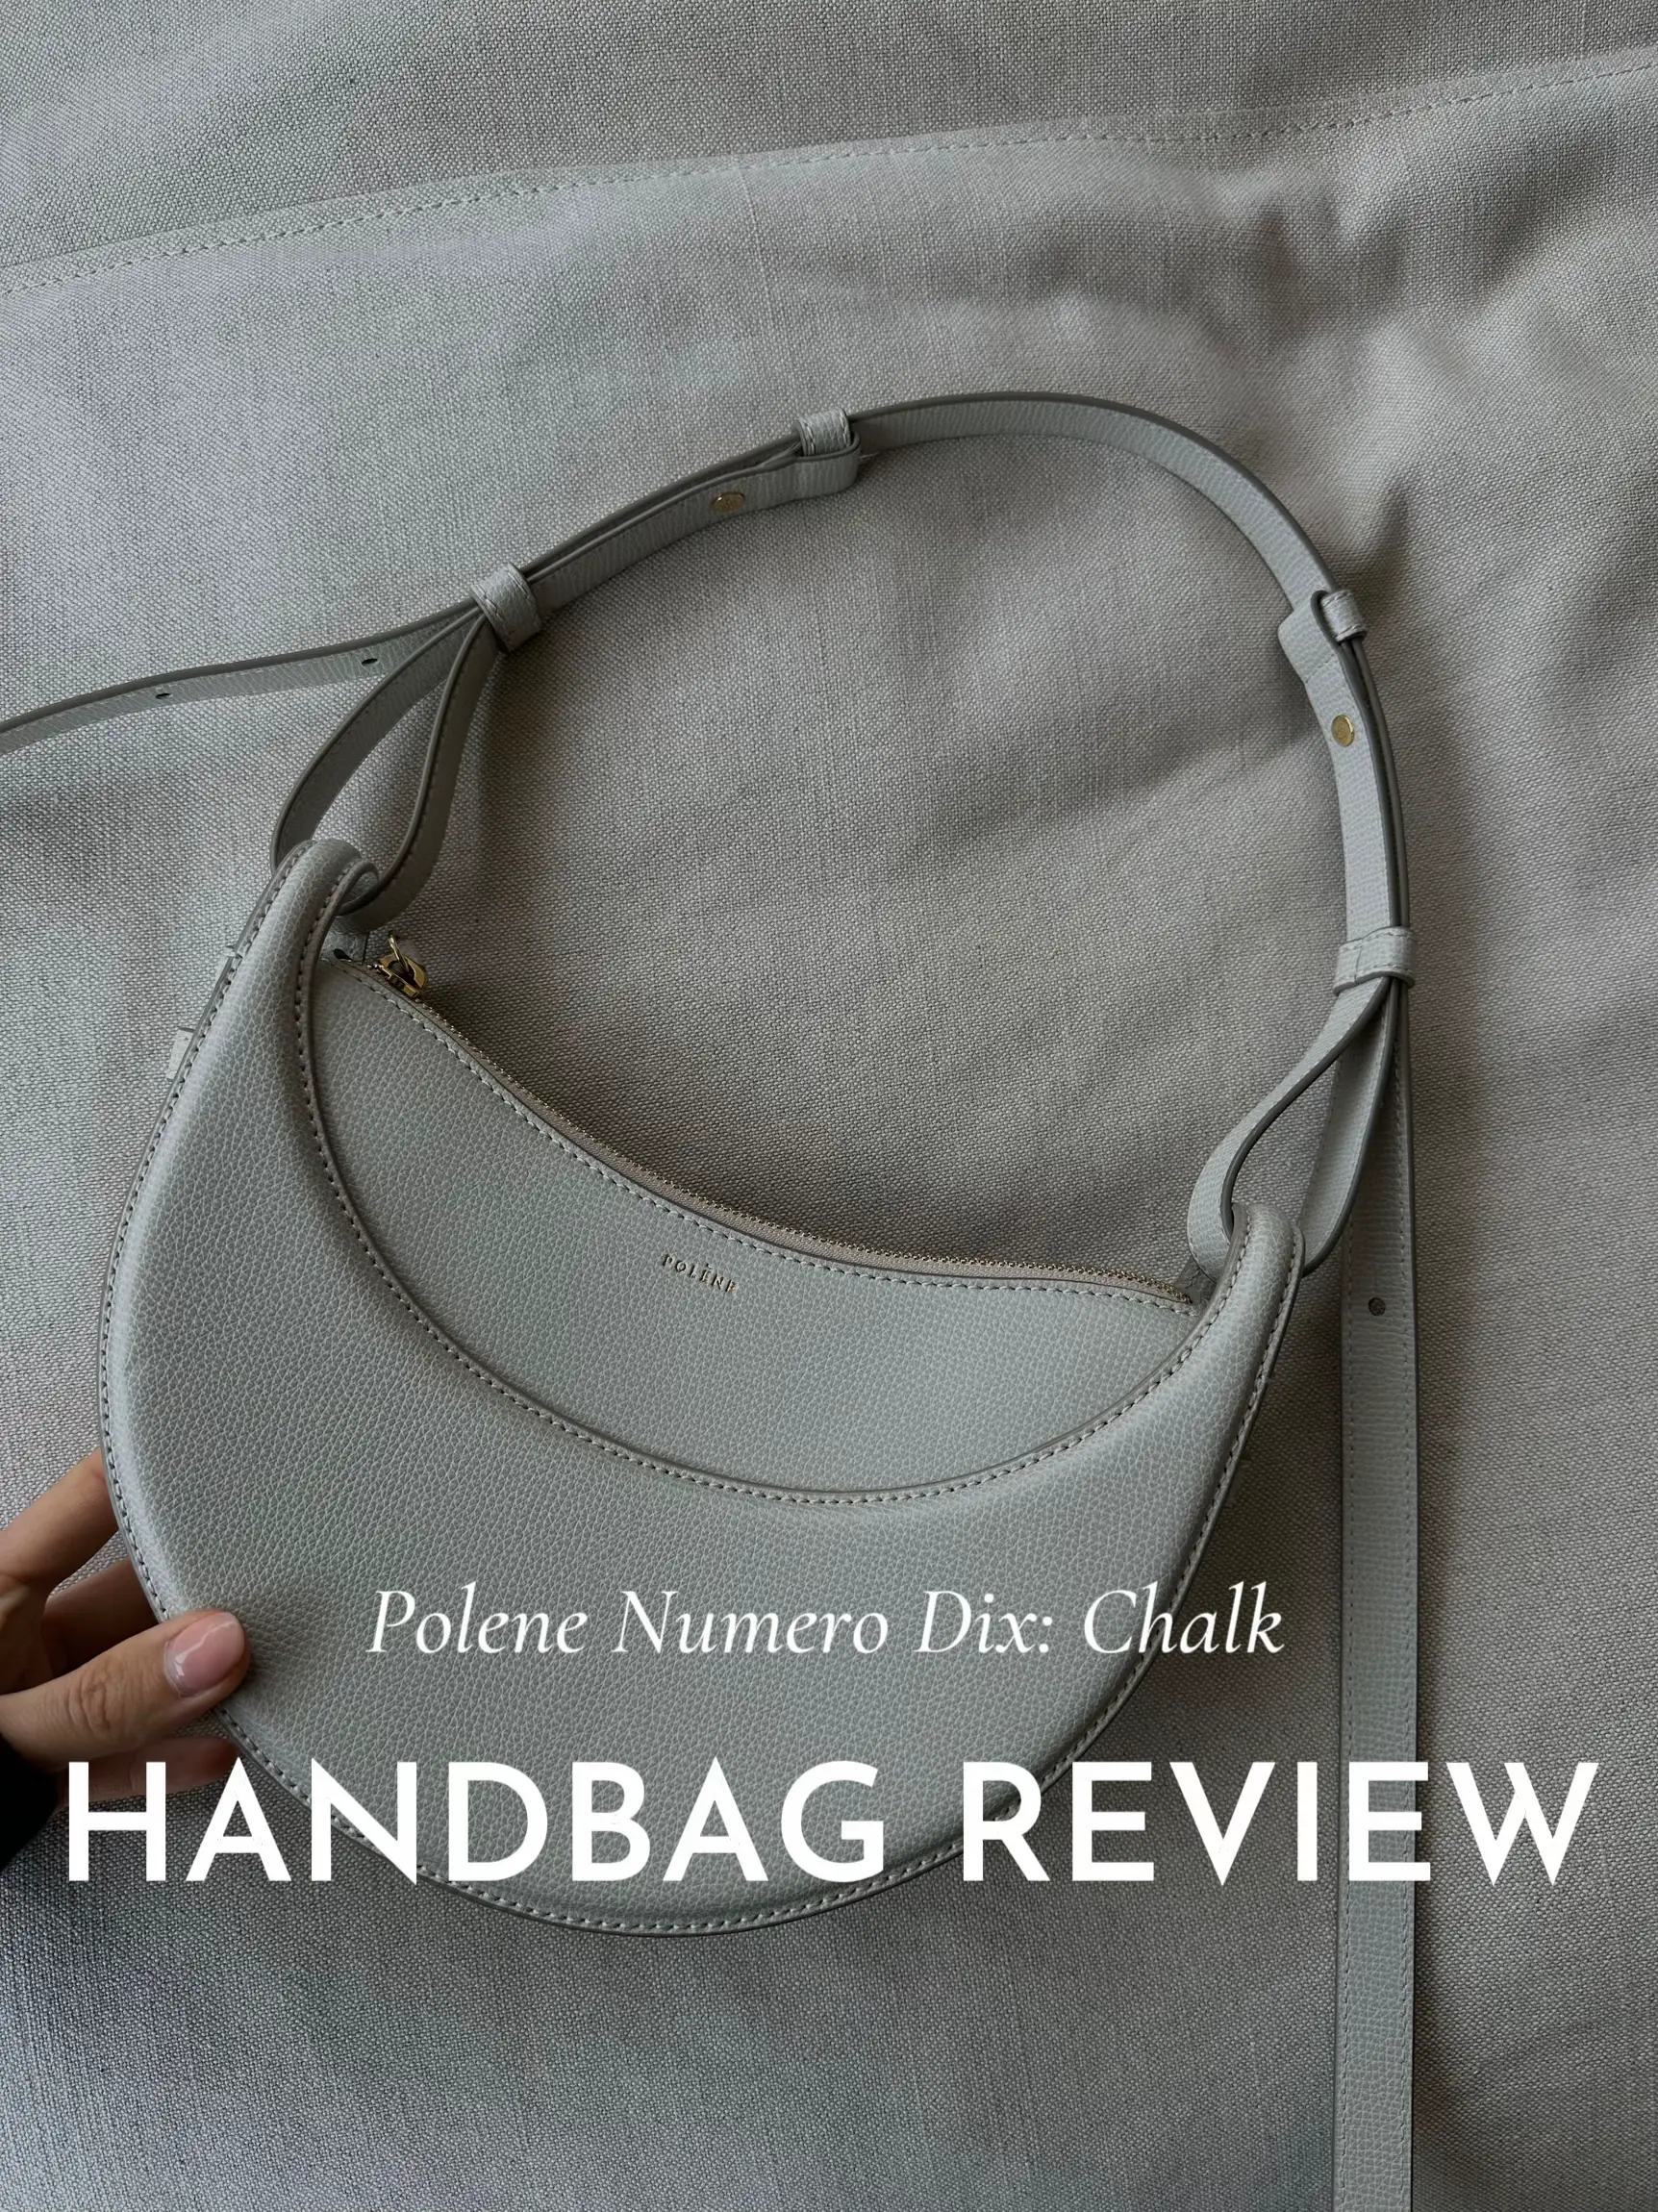 Polène Numéro Dix (10) Bag Review